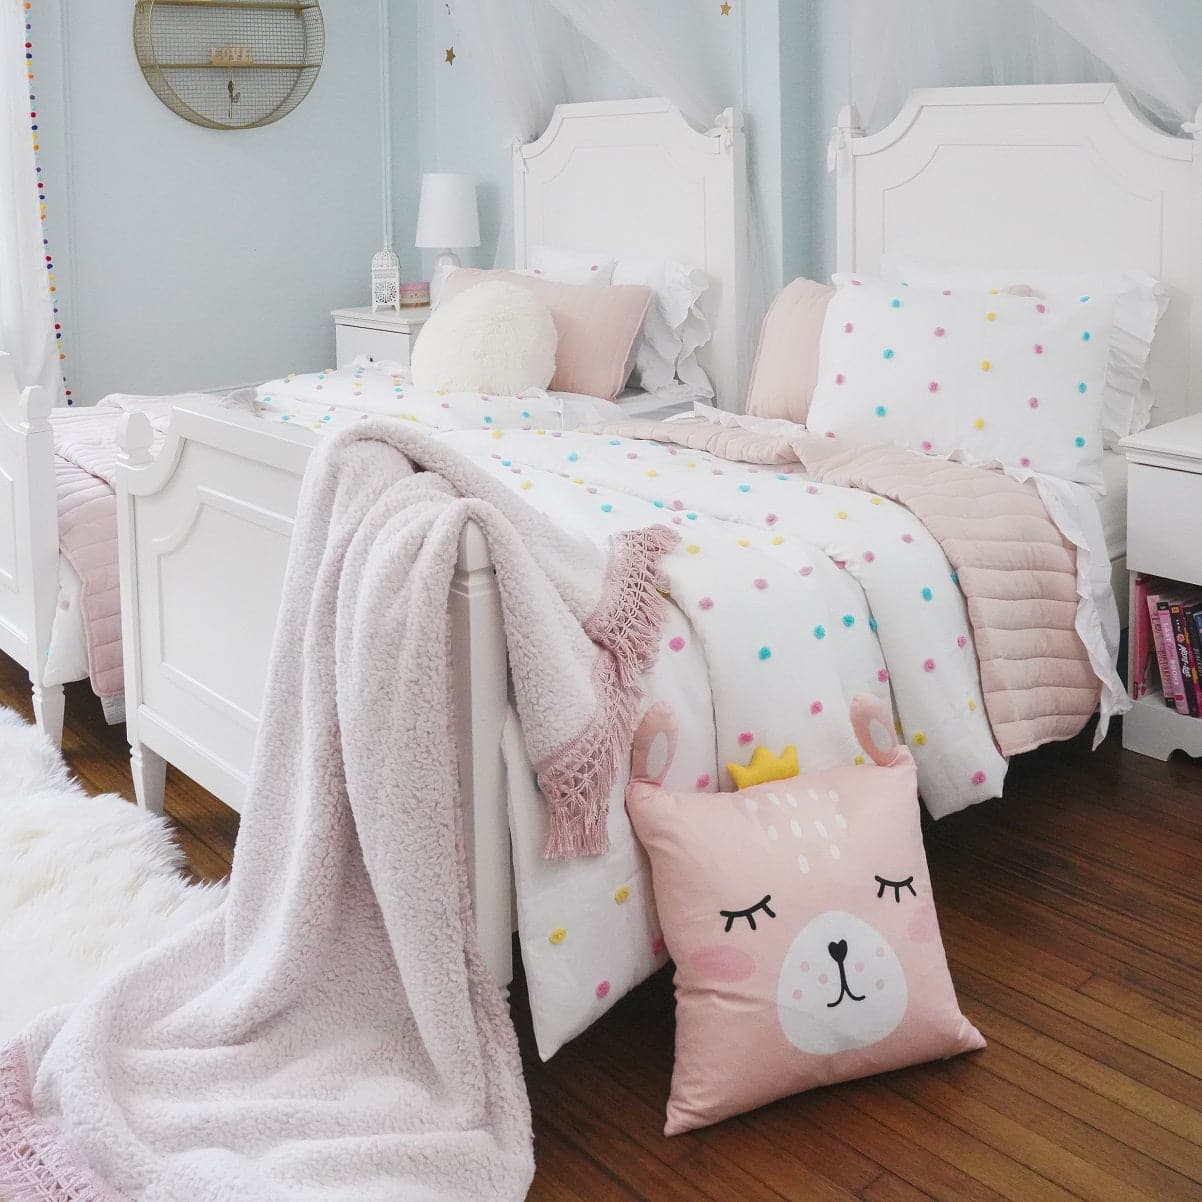 Bedding Bundle: Rainbow Tufted Dot Comforter Set + Soft Stripe Coverlet Set